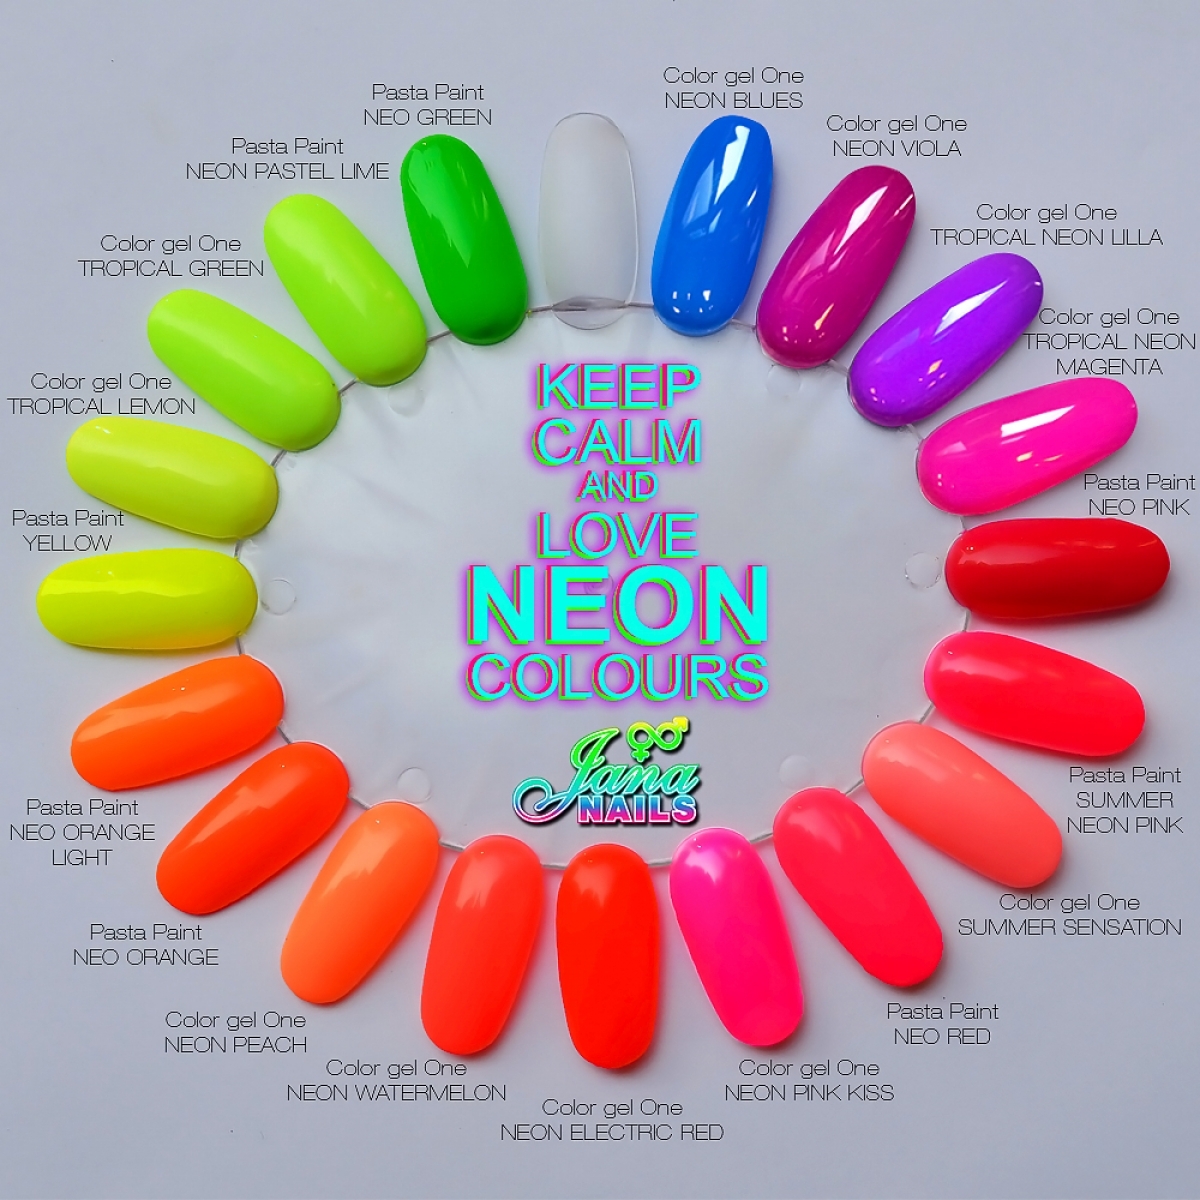 Pasta Paint Neo Pink 5 ml - Neon colour gel - Shop - Jana Nails